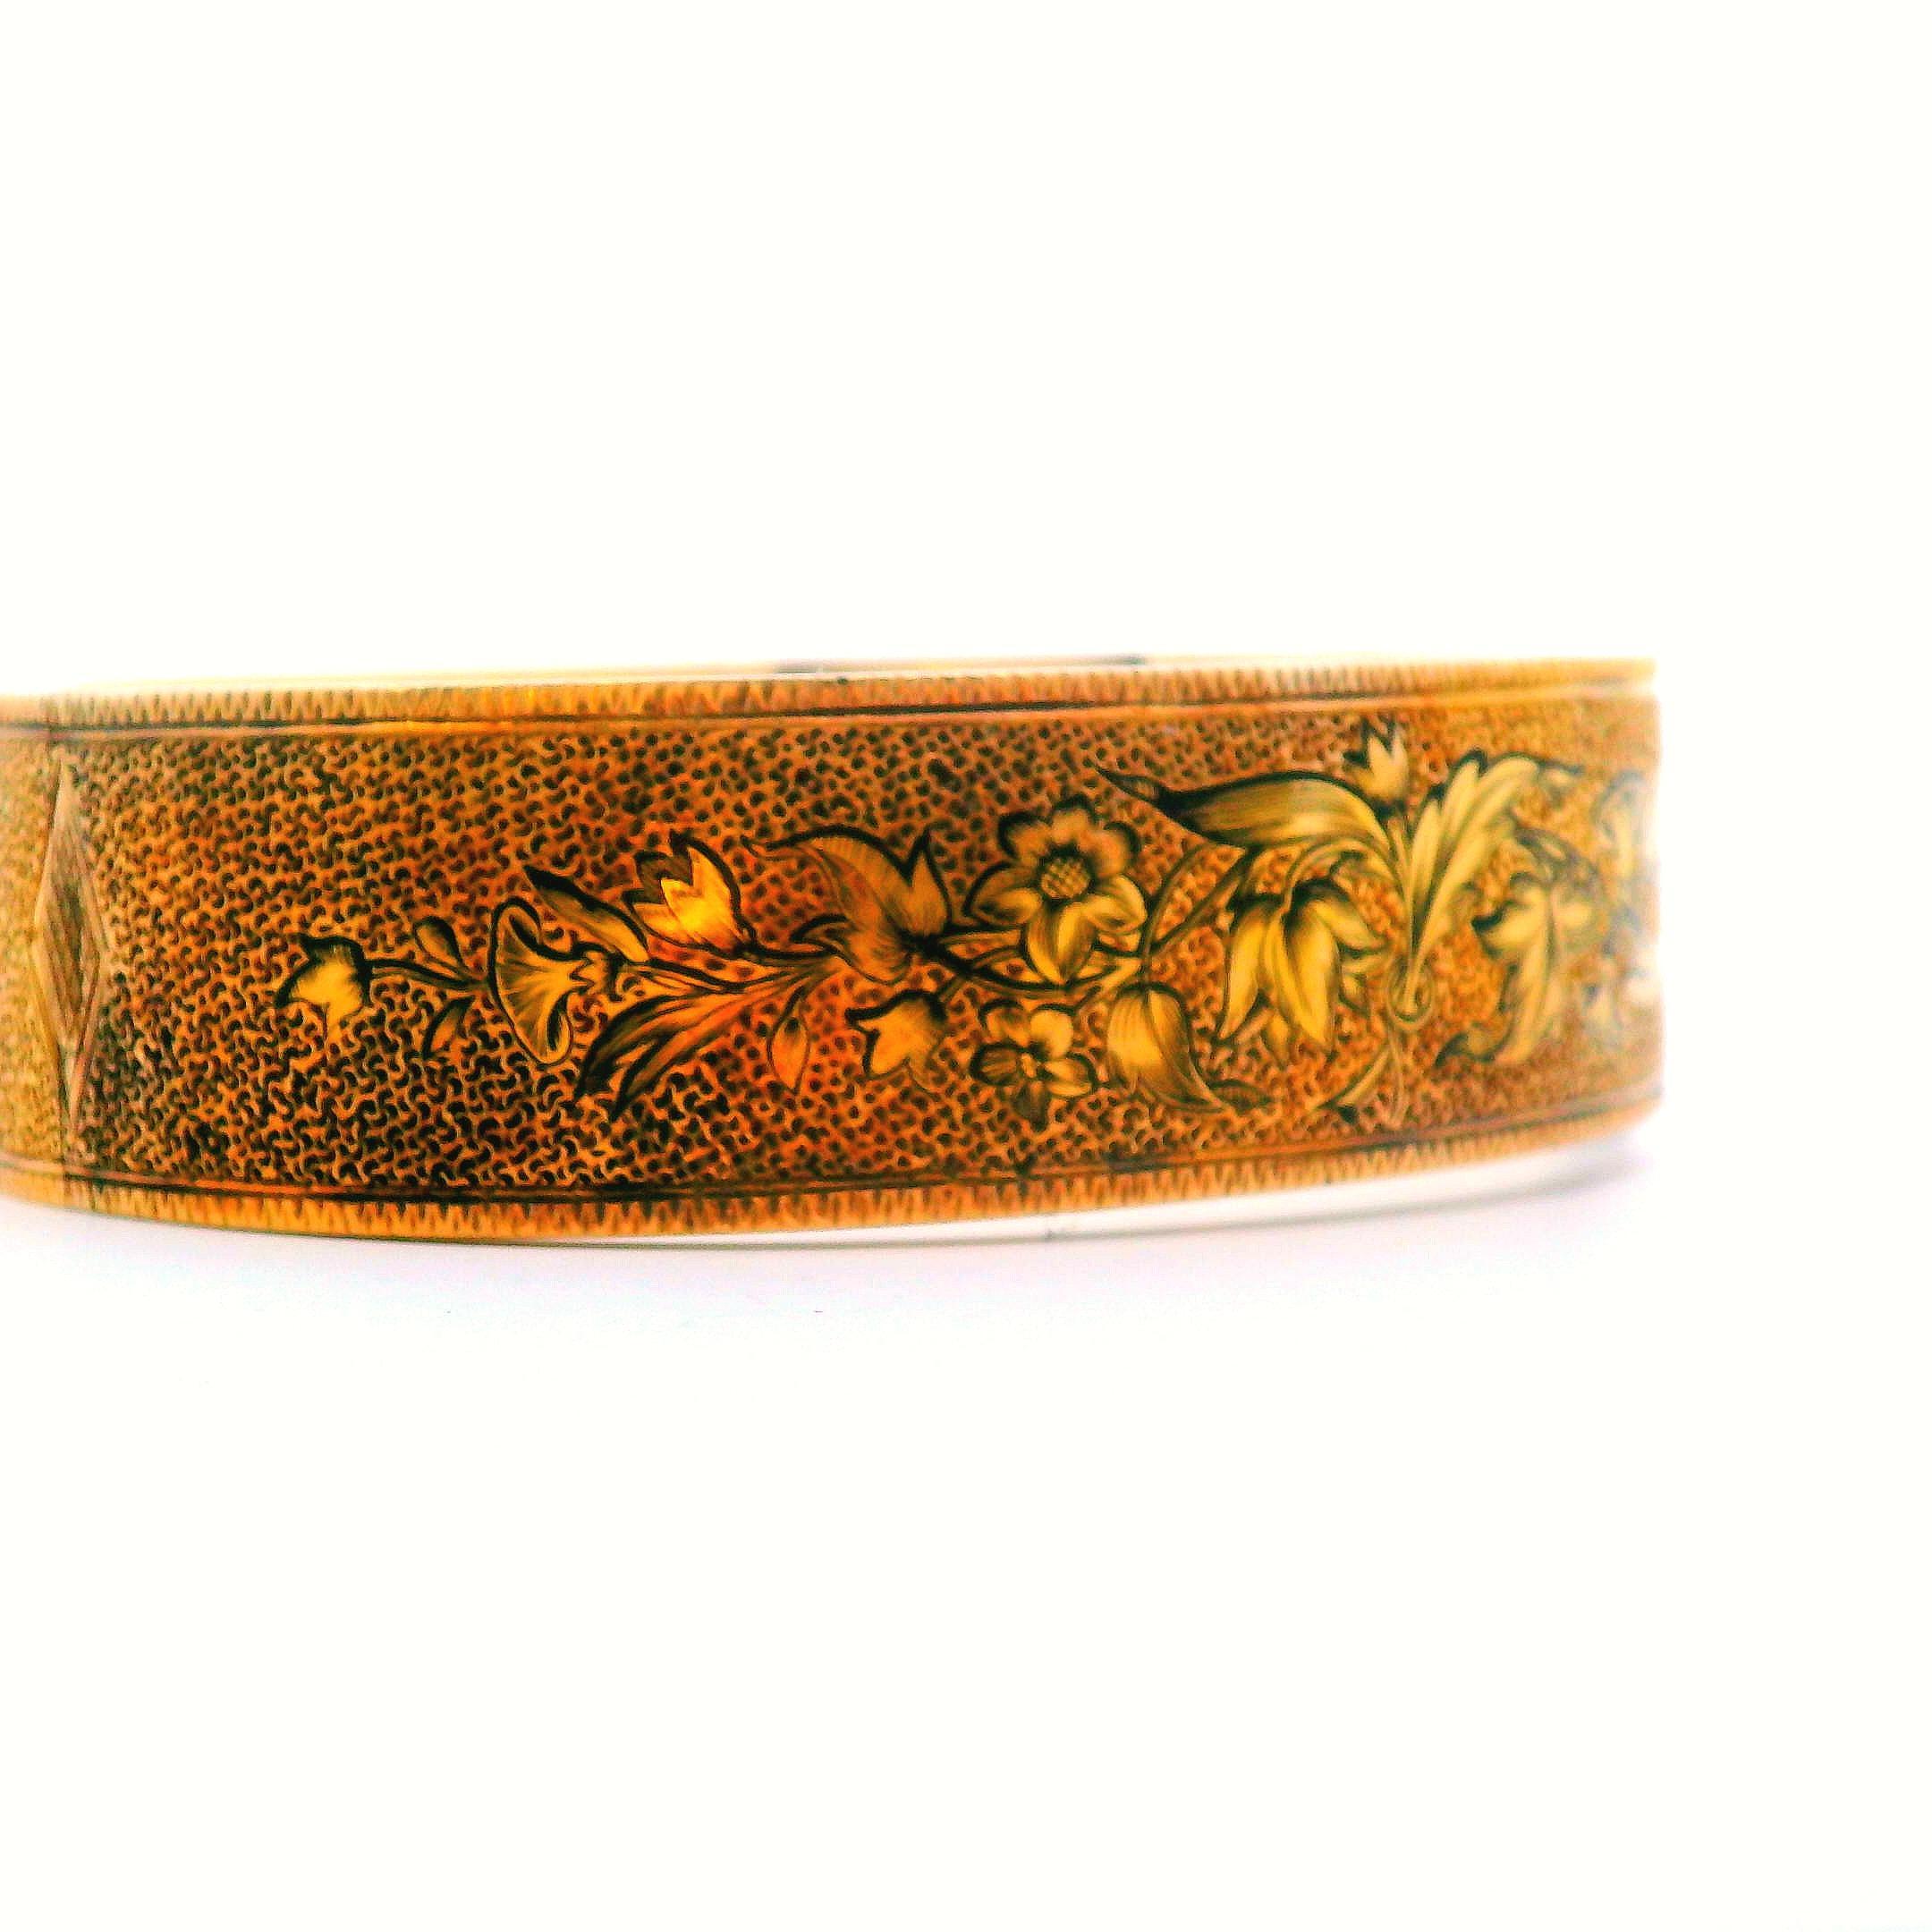 Ce magnifique bracelet victorien des années 1880 est émaillé d'un beau motif floral et est réalisé en or jaune 14k. Fabriqué en or jaune 14 carats, ce bracelet est réalisé avec des matériaux précieux et un savoir-faire artisanal de qualité qui lui